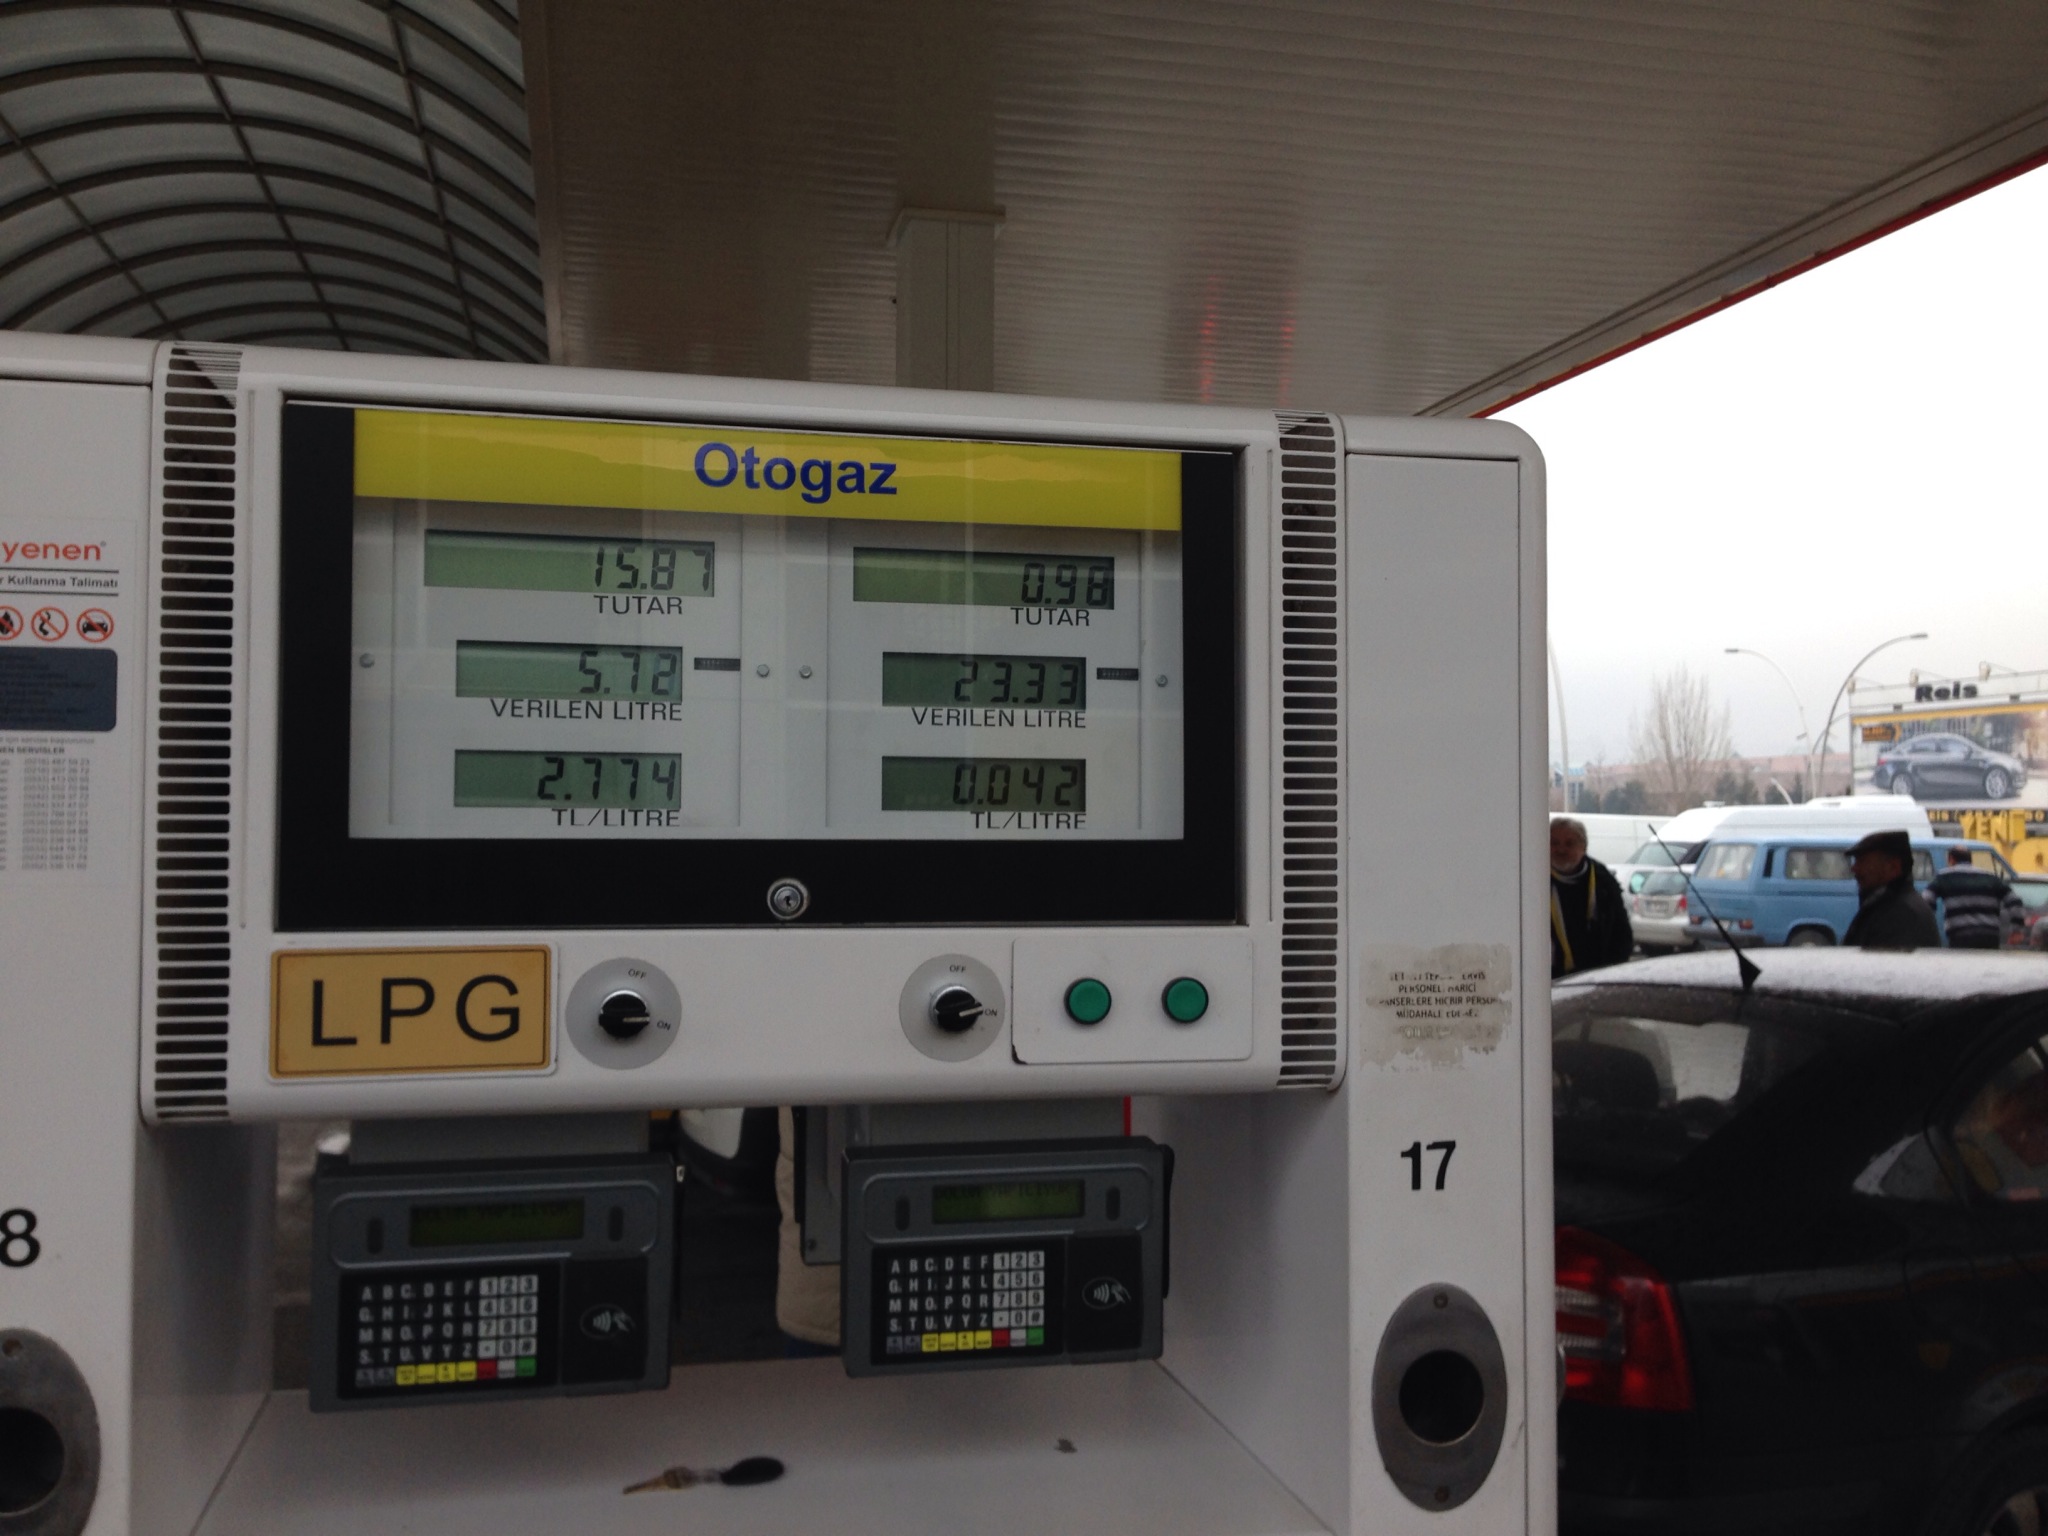  Türkiye'de En ucuz LPG'yi ben aldım Hemde Shell'den